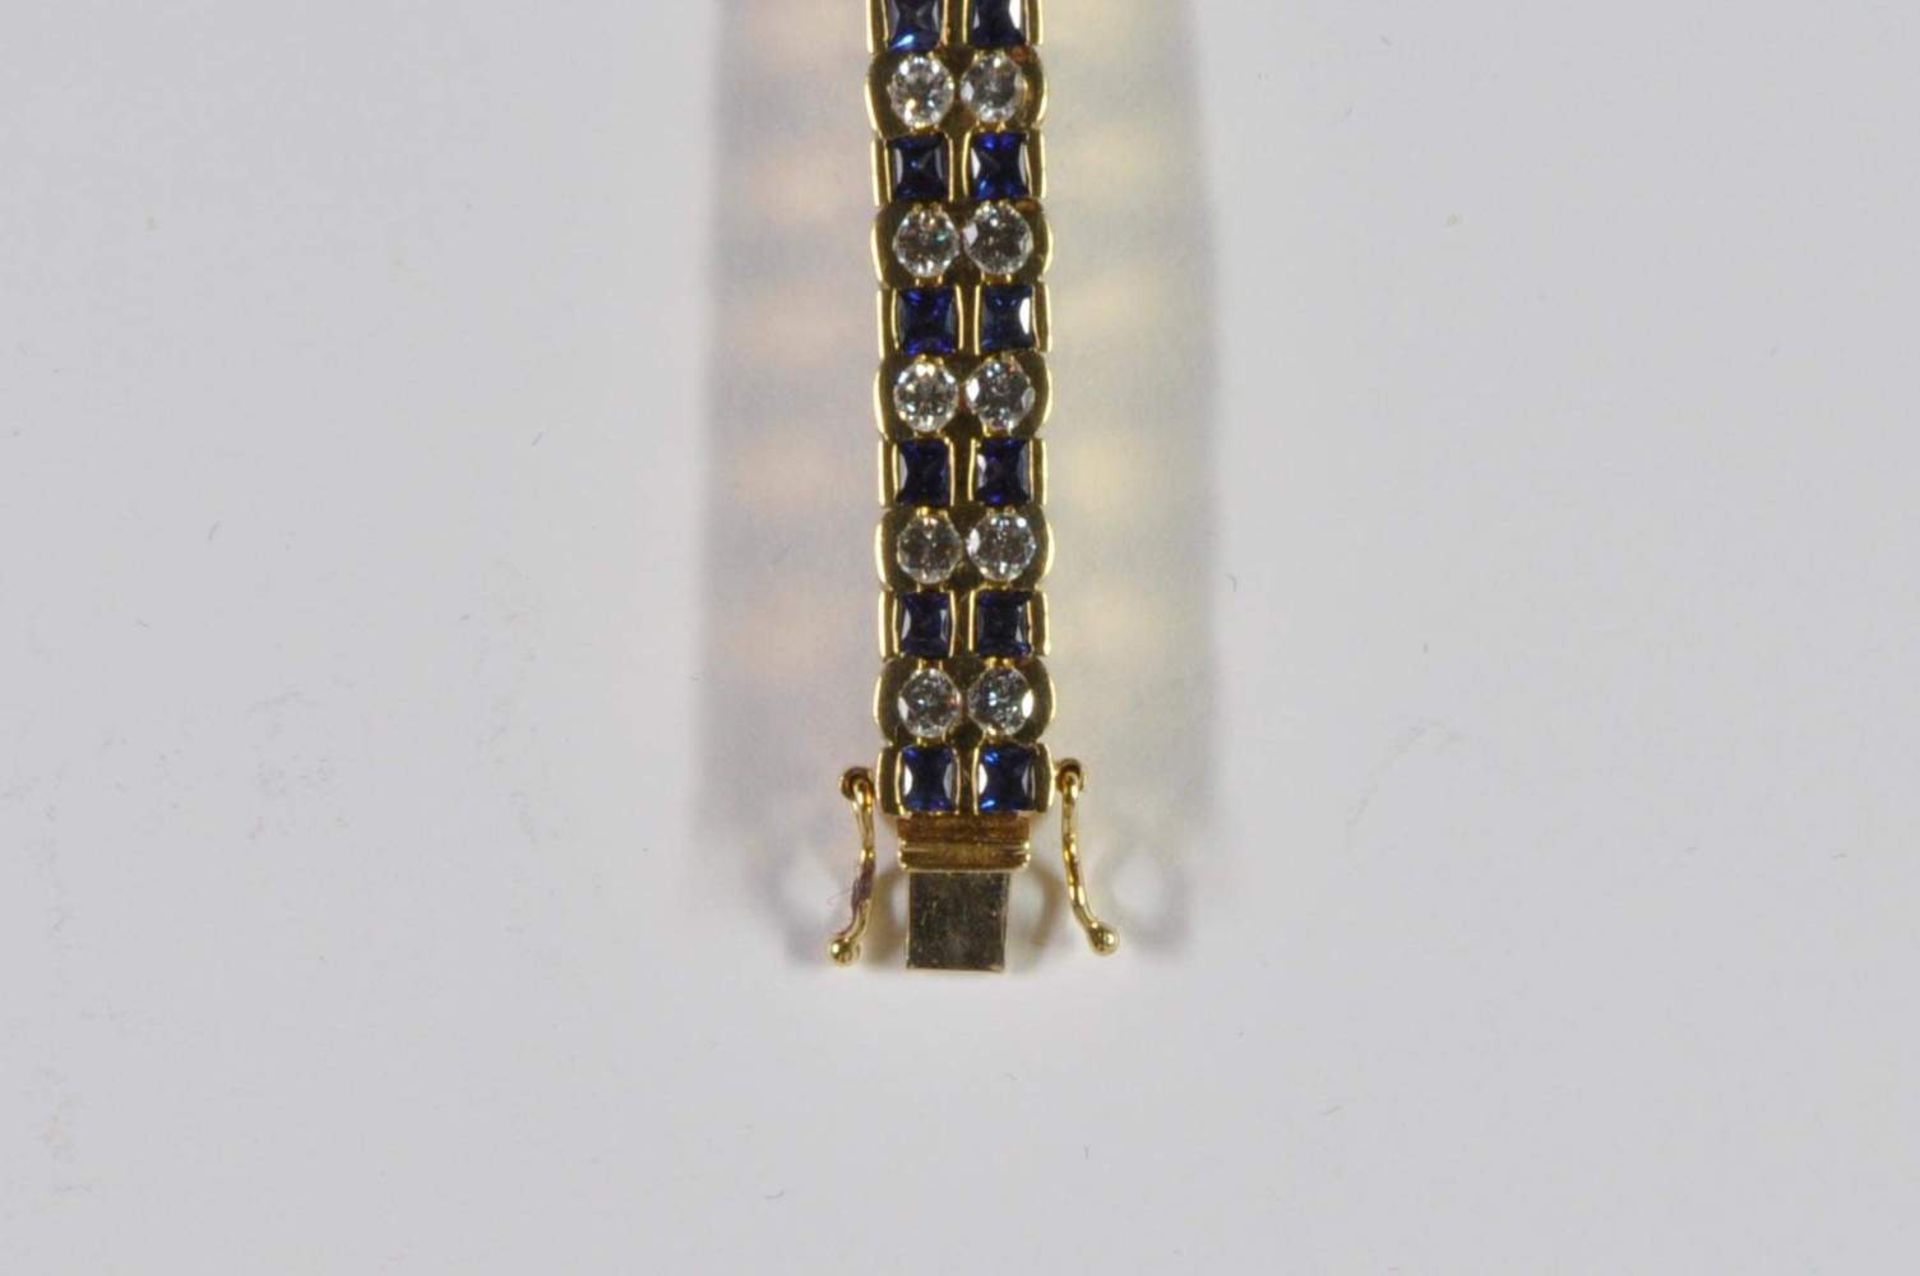 Saphir-Brillant-Armband, 750 Gelbgold, Punze, 66 Brillanten von zus. ca. 3,2ct, 64 Saphiren von zus. - Bild 9 aus 20